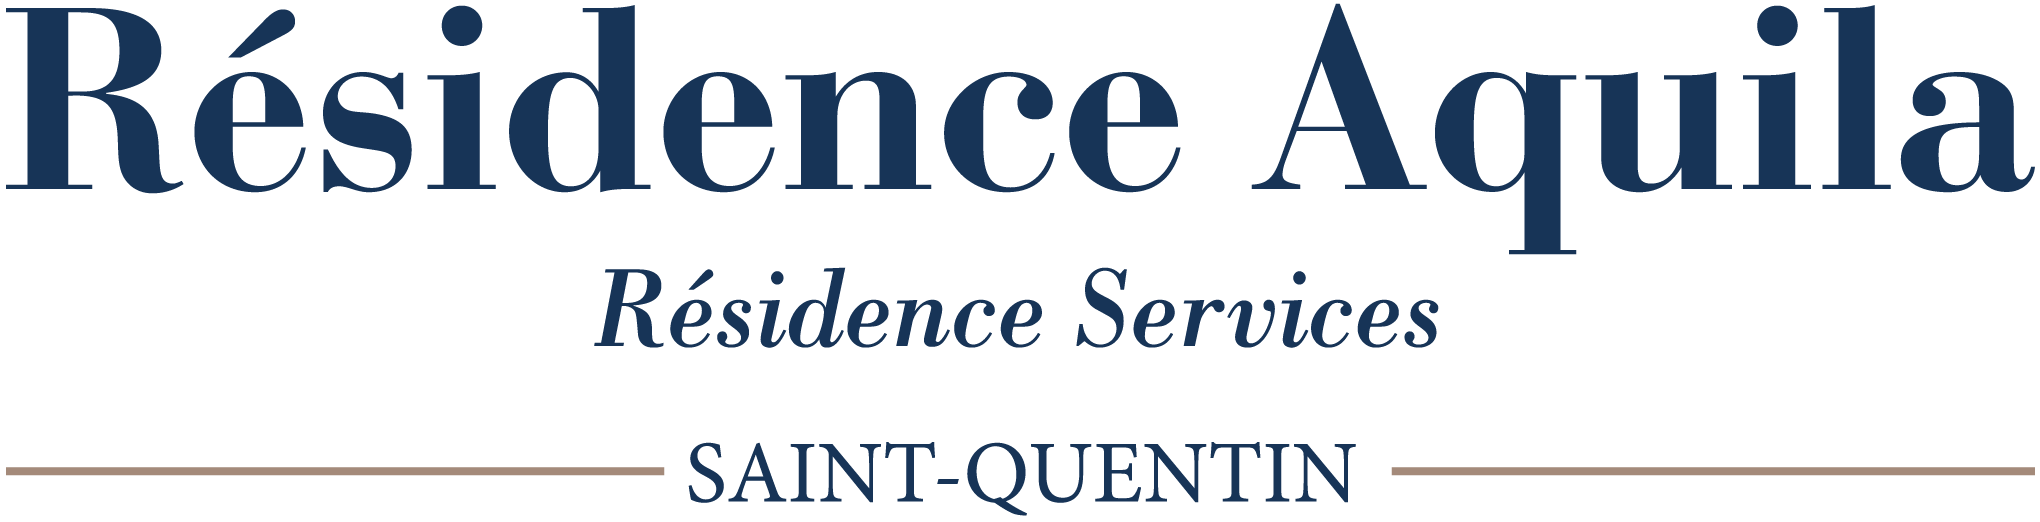 Résidence Services Aquila - Saint-Quentin - 